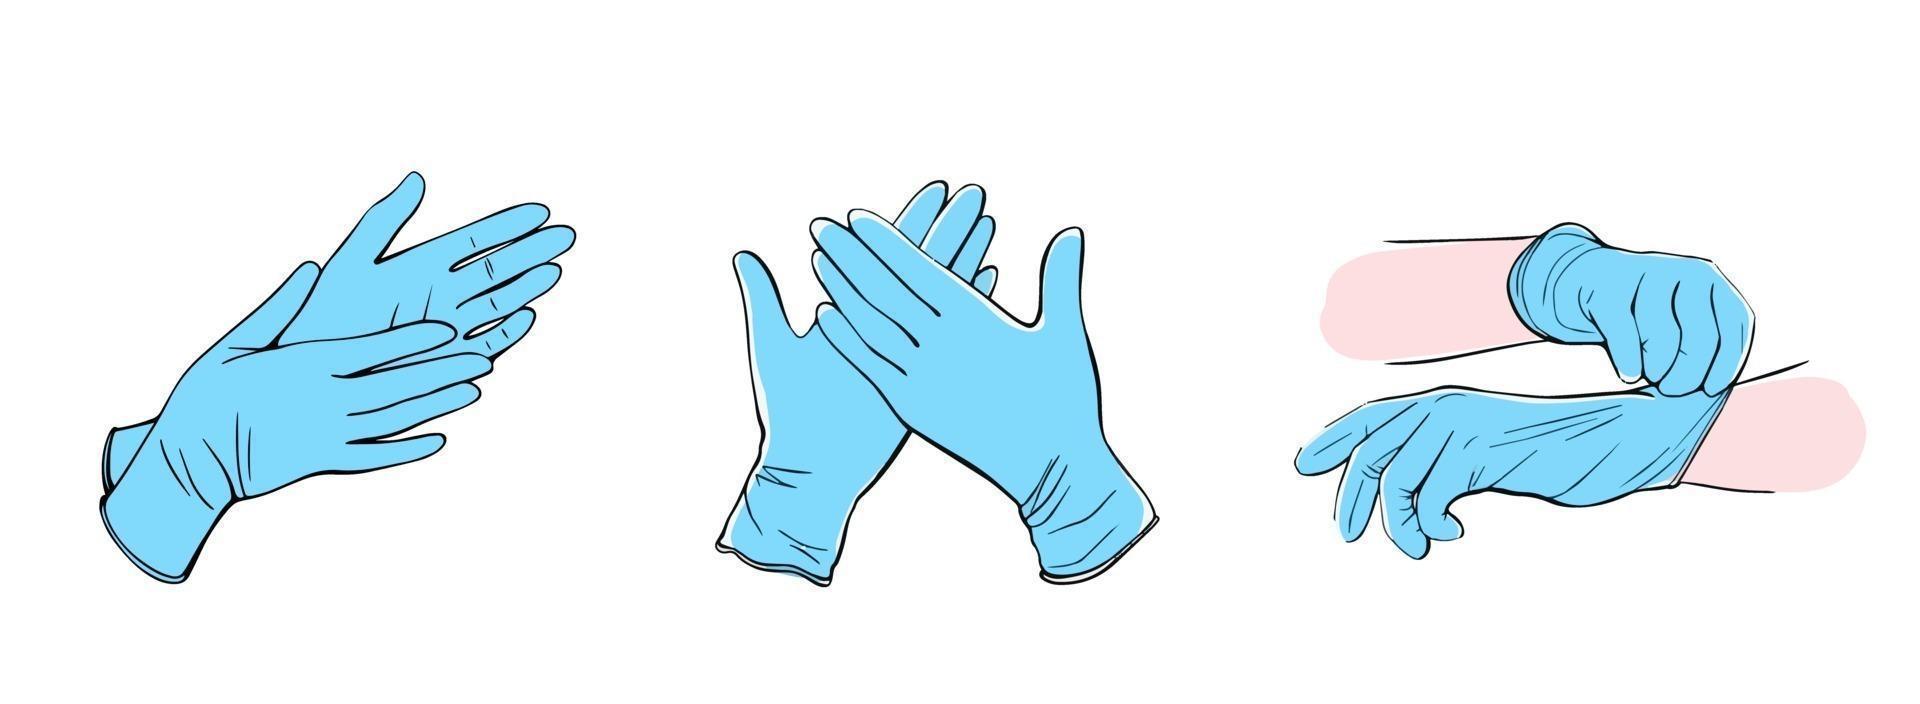 medizinische schutzhandschuhe isoliert auf weißem hintergrund. handgezeichnete Vektorgrafik im Doodle-Stil vektor